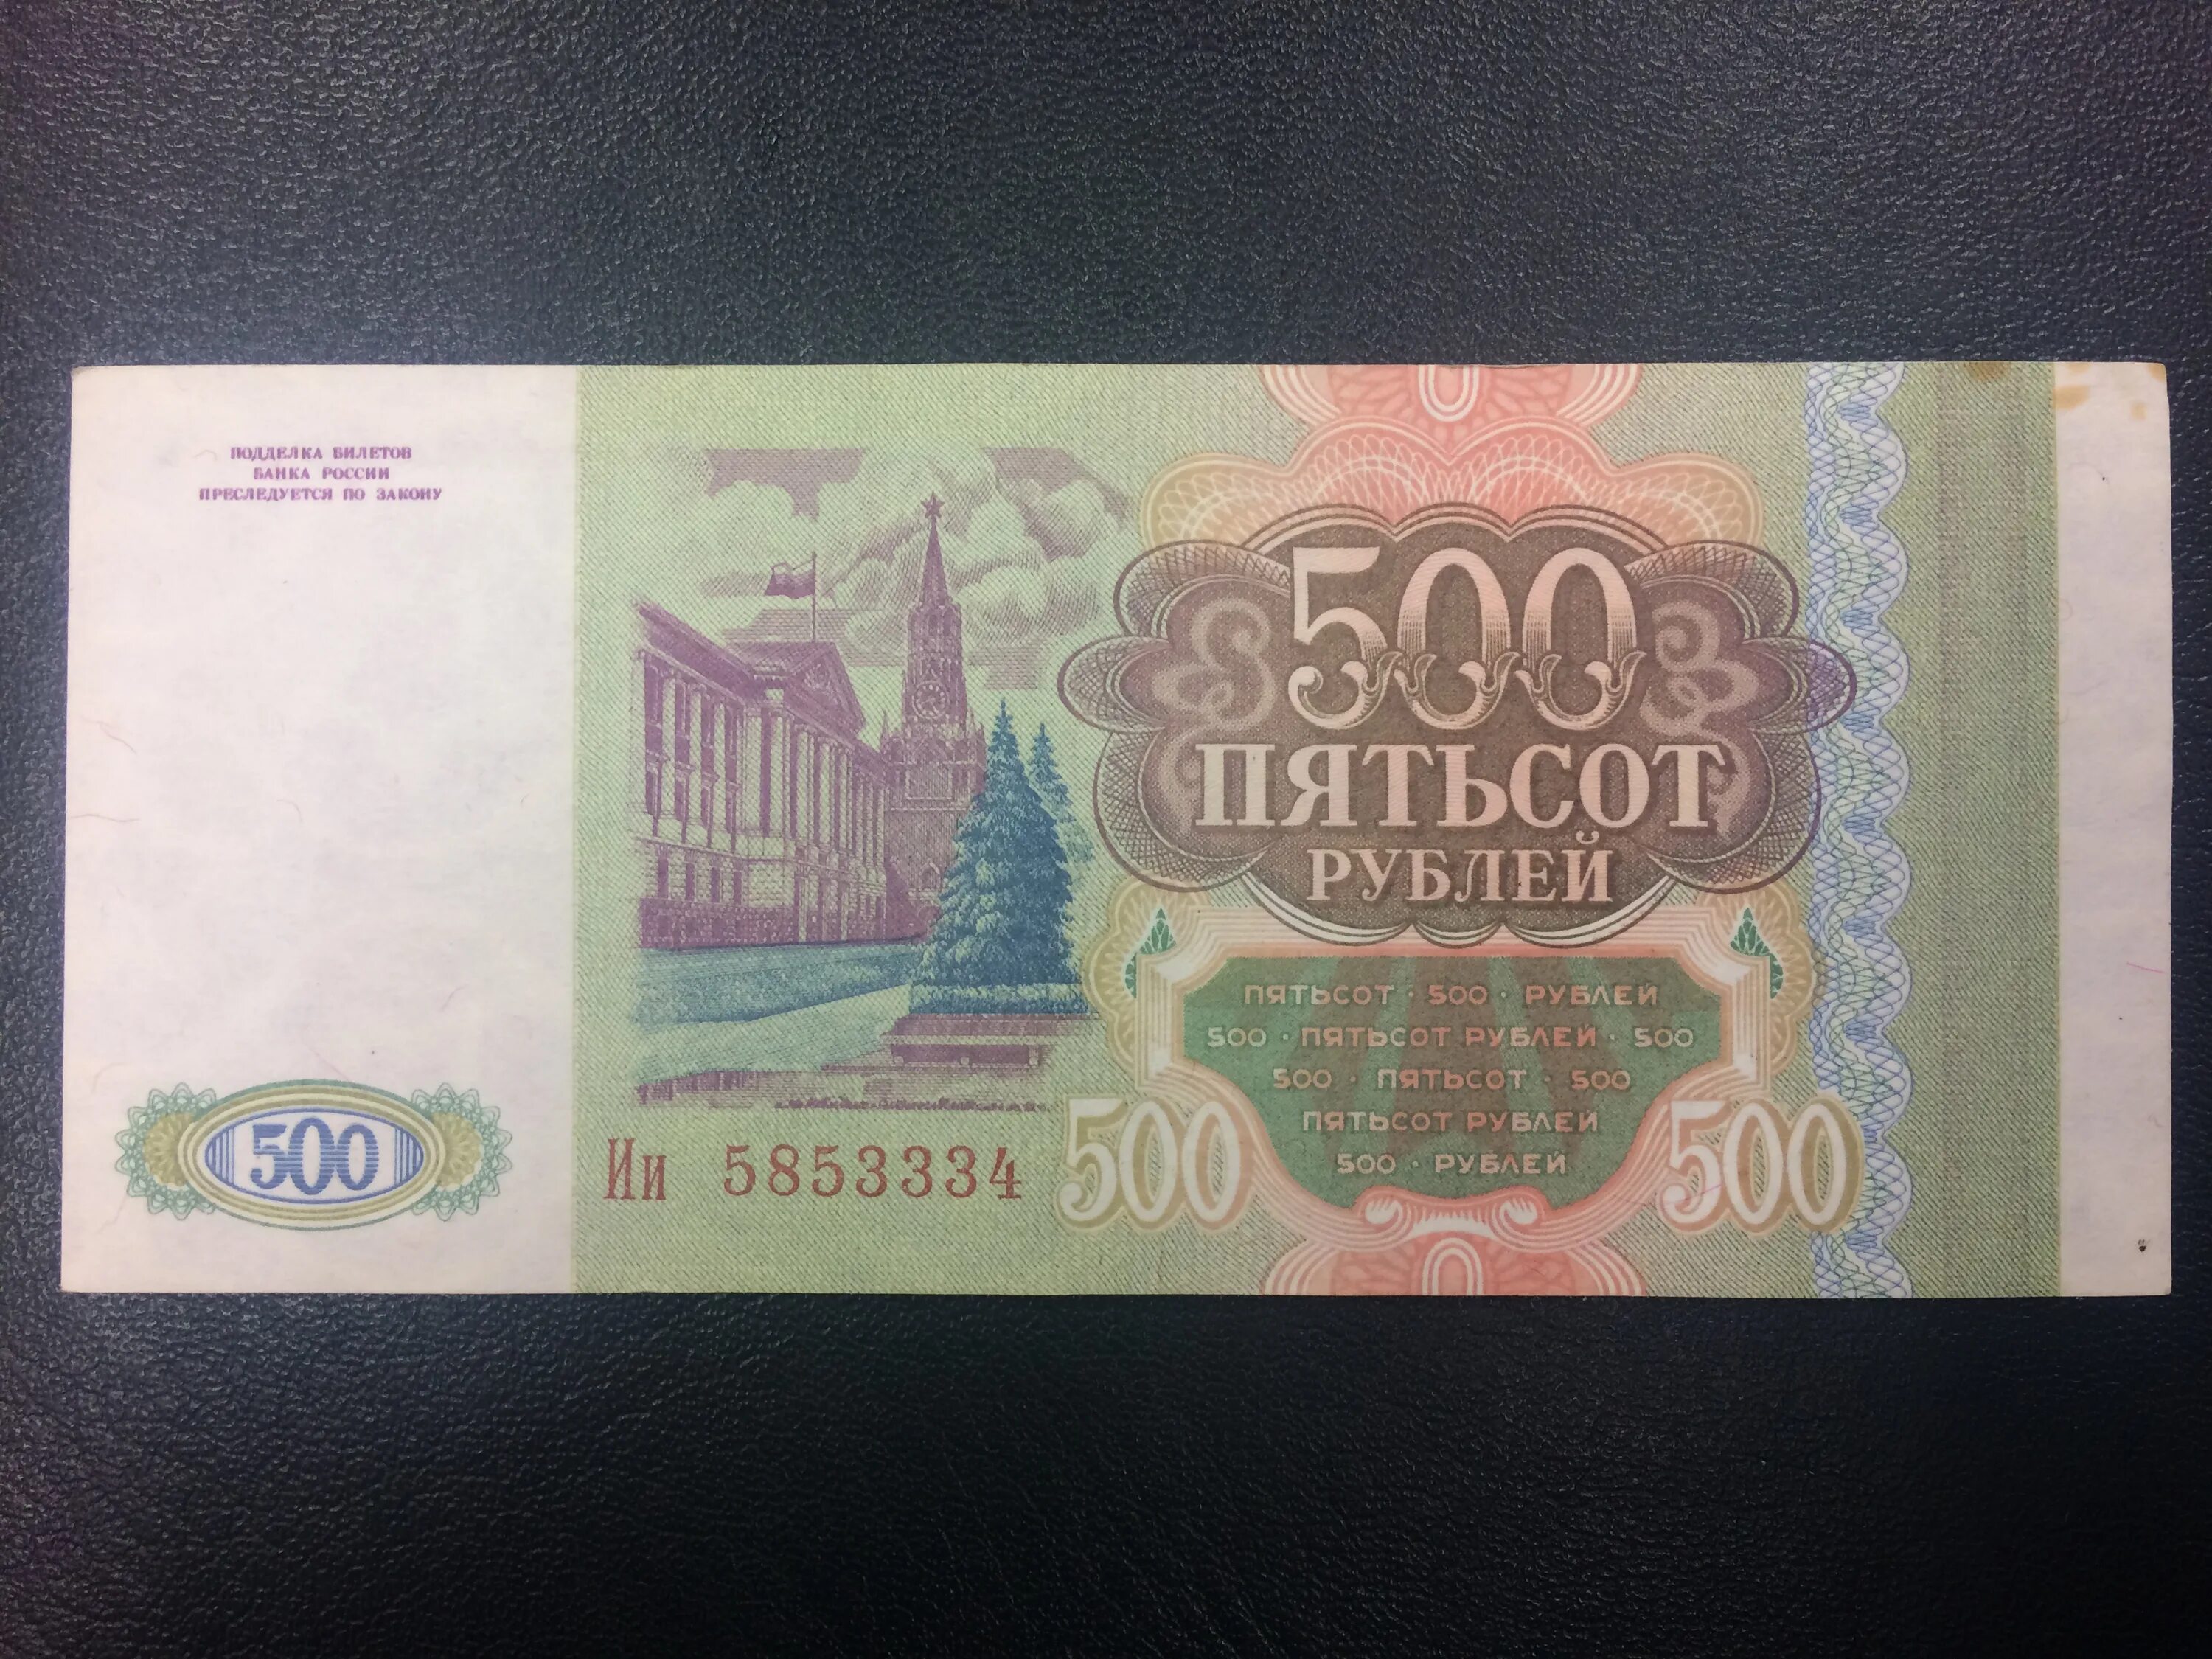 500 00 в рублях. 500 Рублей 1993. Купюра 500 рублей 1993 года. Пятьсот рублей 1993 года. Купюра 500 рублей 1993.